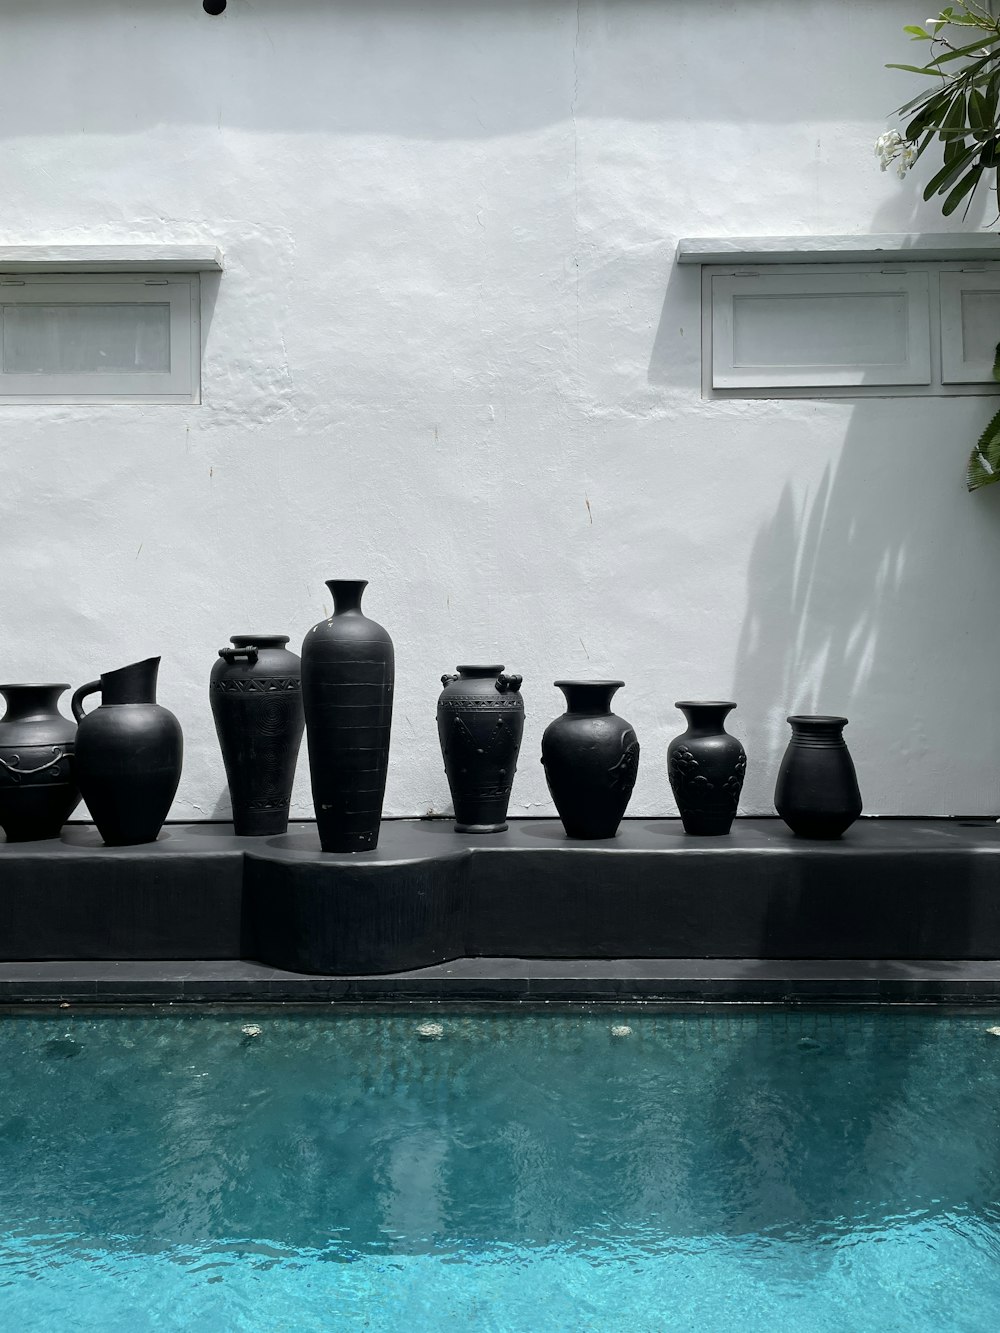 黒い陶器の花瓶に黒い陶器の壺